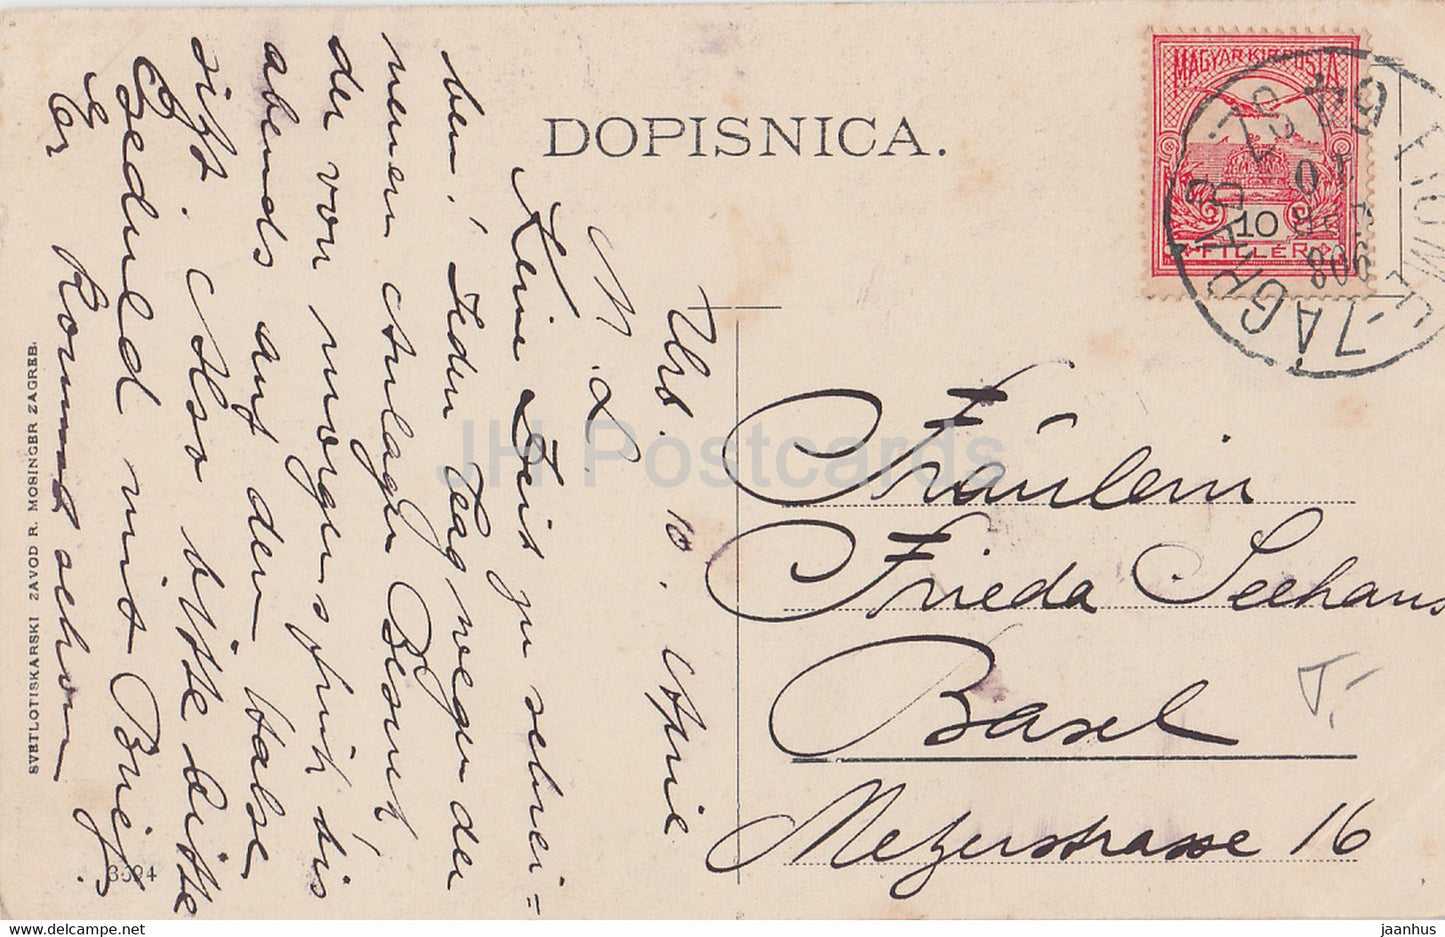 R. Mosinger - Frau - Kroatische Volkstrachten - alte Postkarte - 1910 - Kroatien - gebraucht